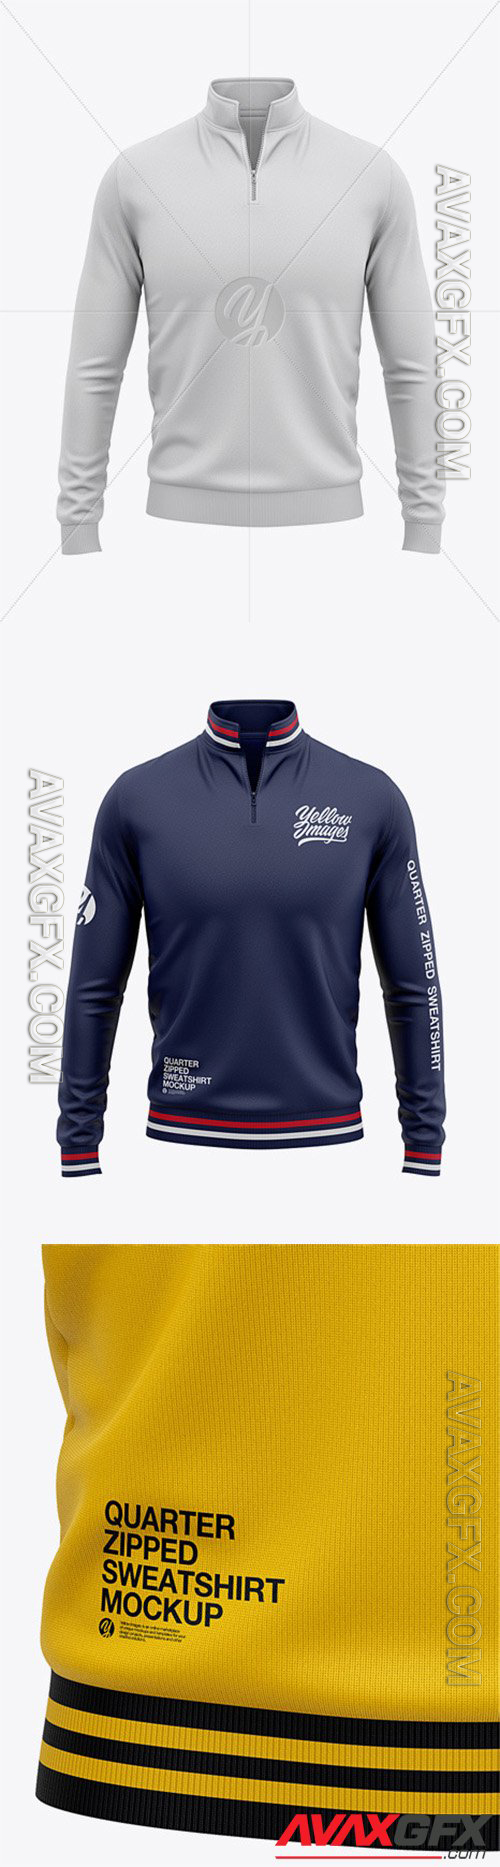 Men's Quarter Zip Sweatshirt Mockup - Front View Of Zipped Pullover 53139